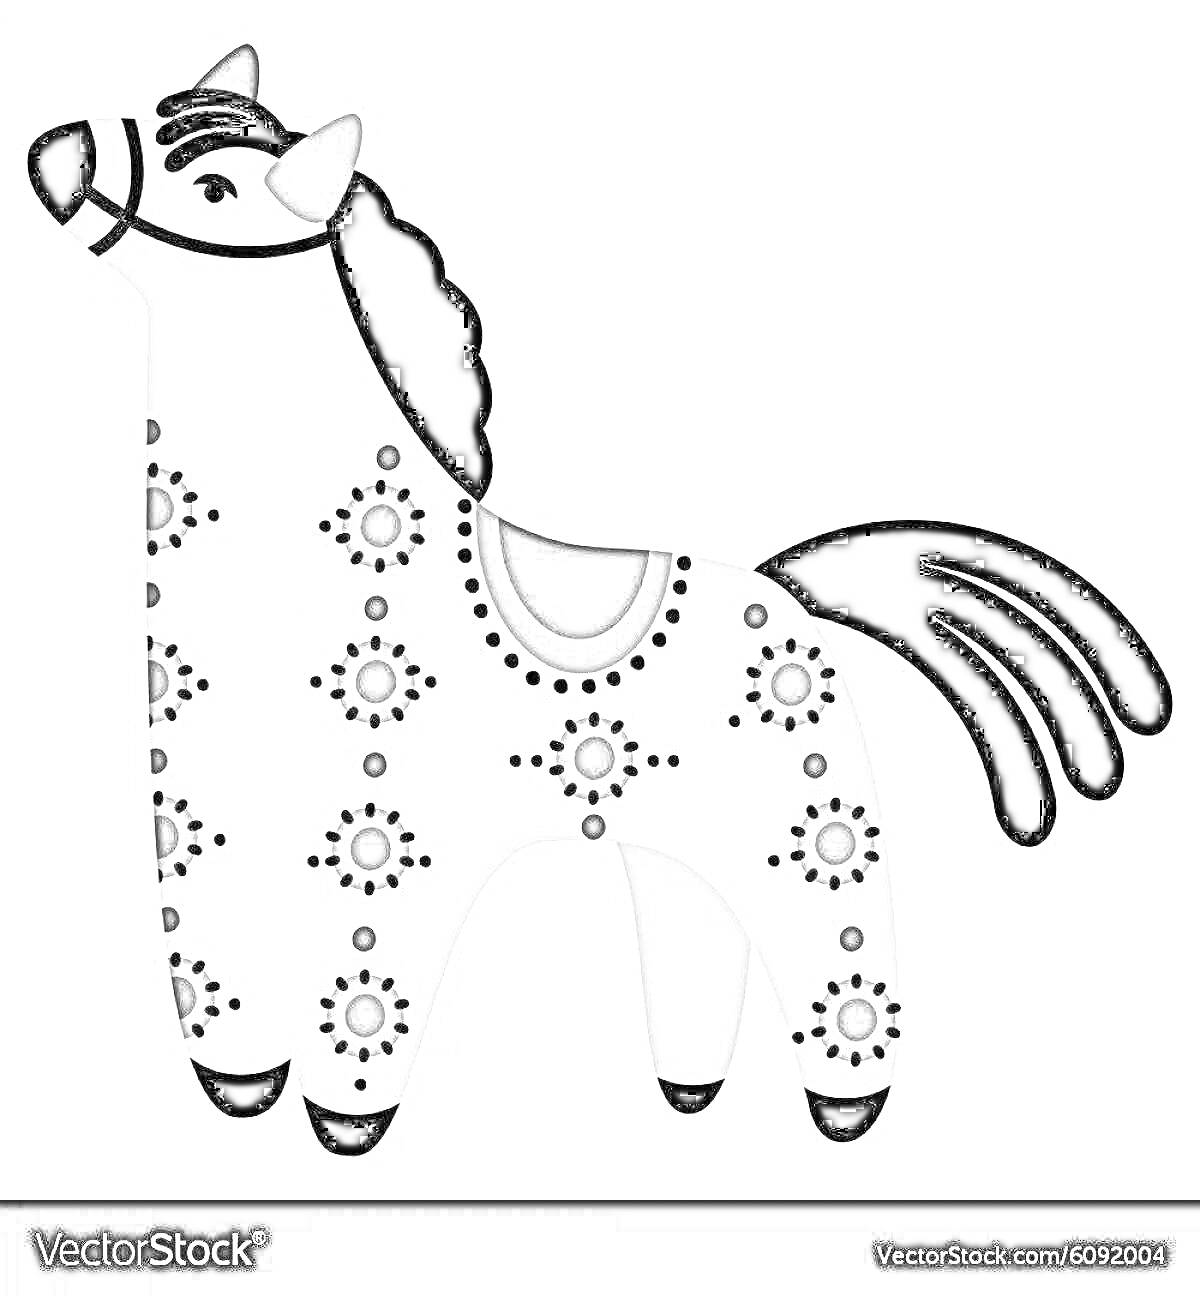 Раскраска Дымковская игрушка: лошадь с черной гривой и хвостом, черными узорами и седлом